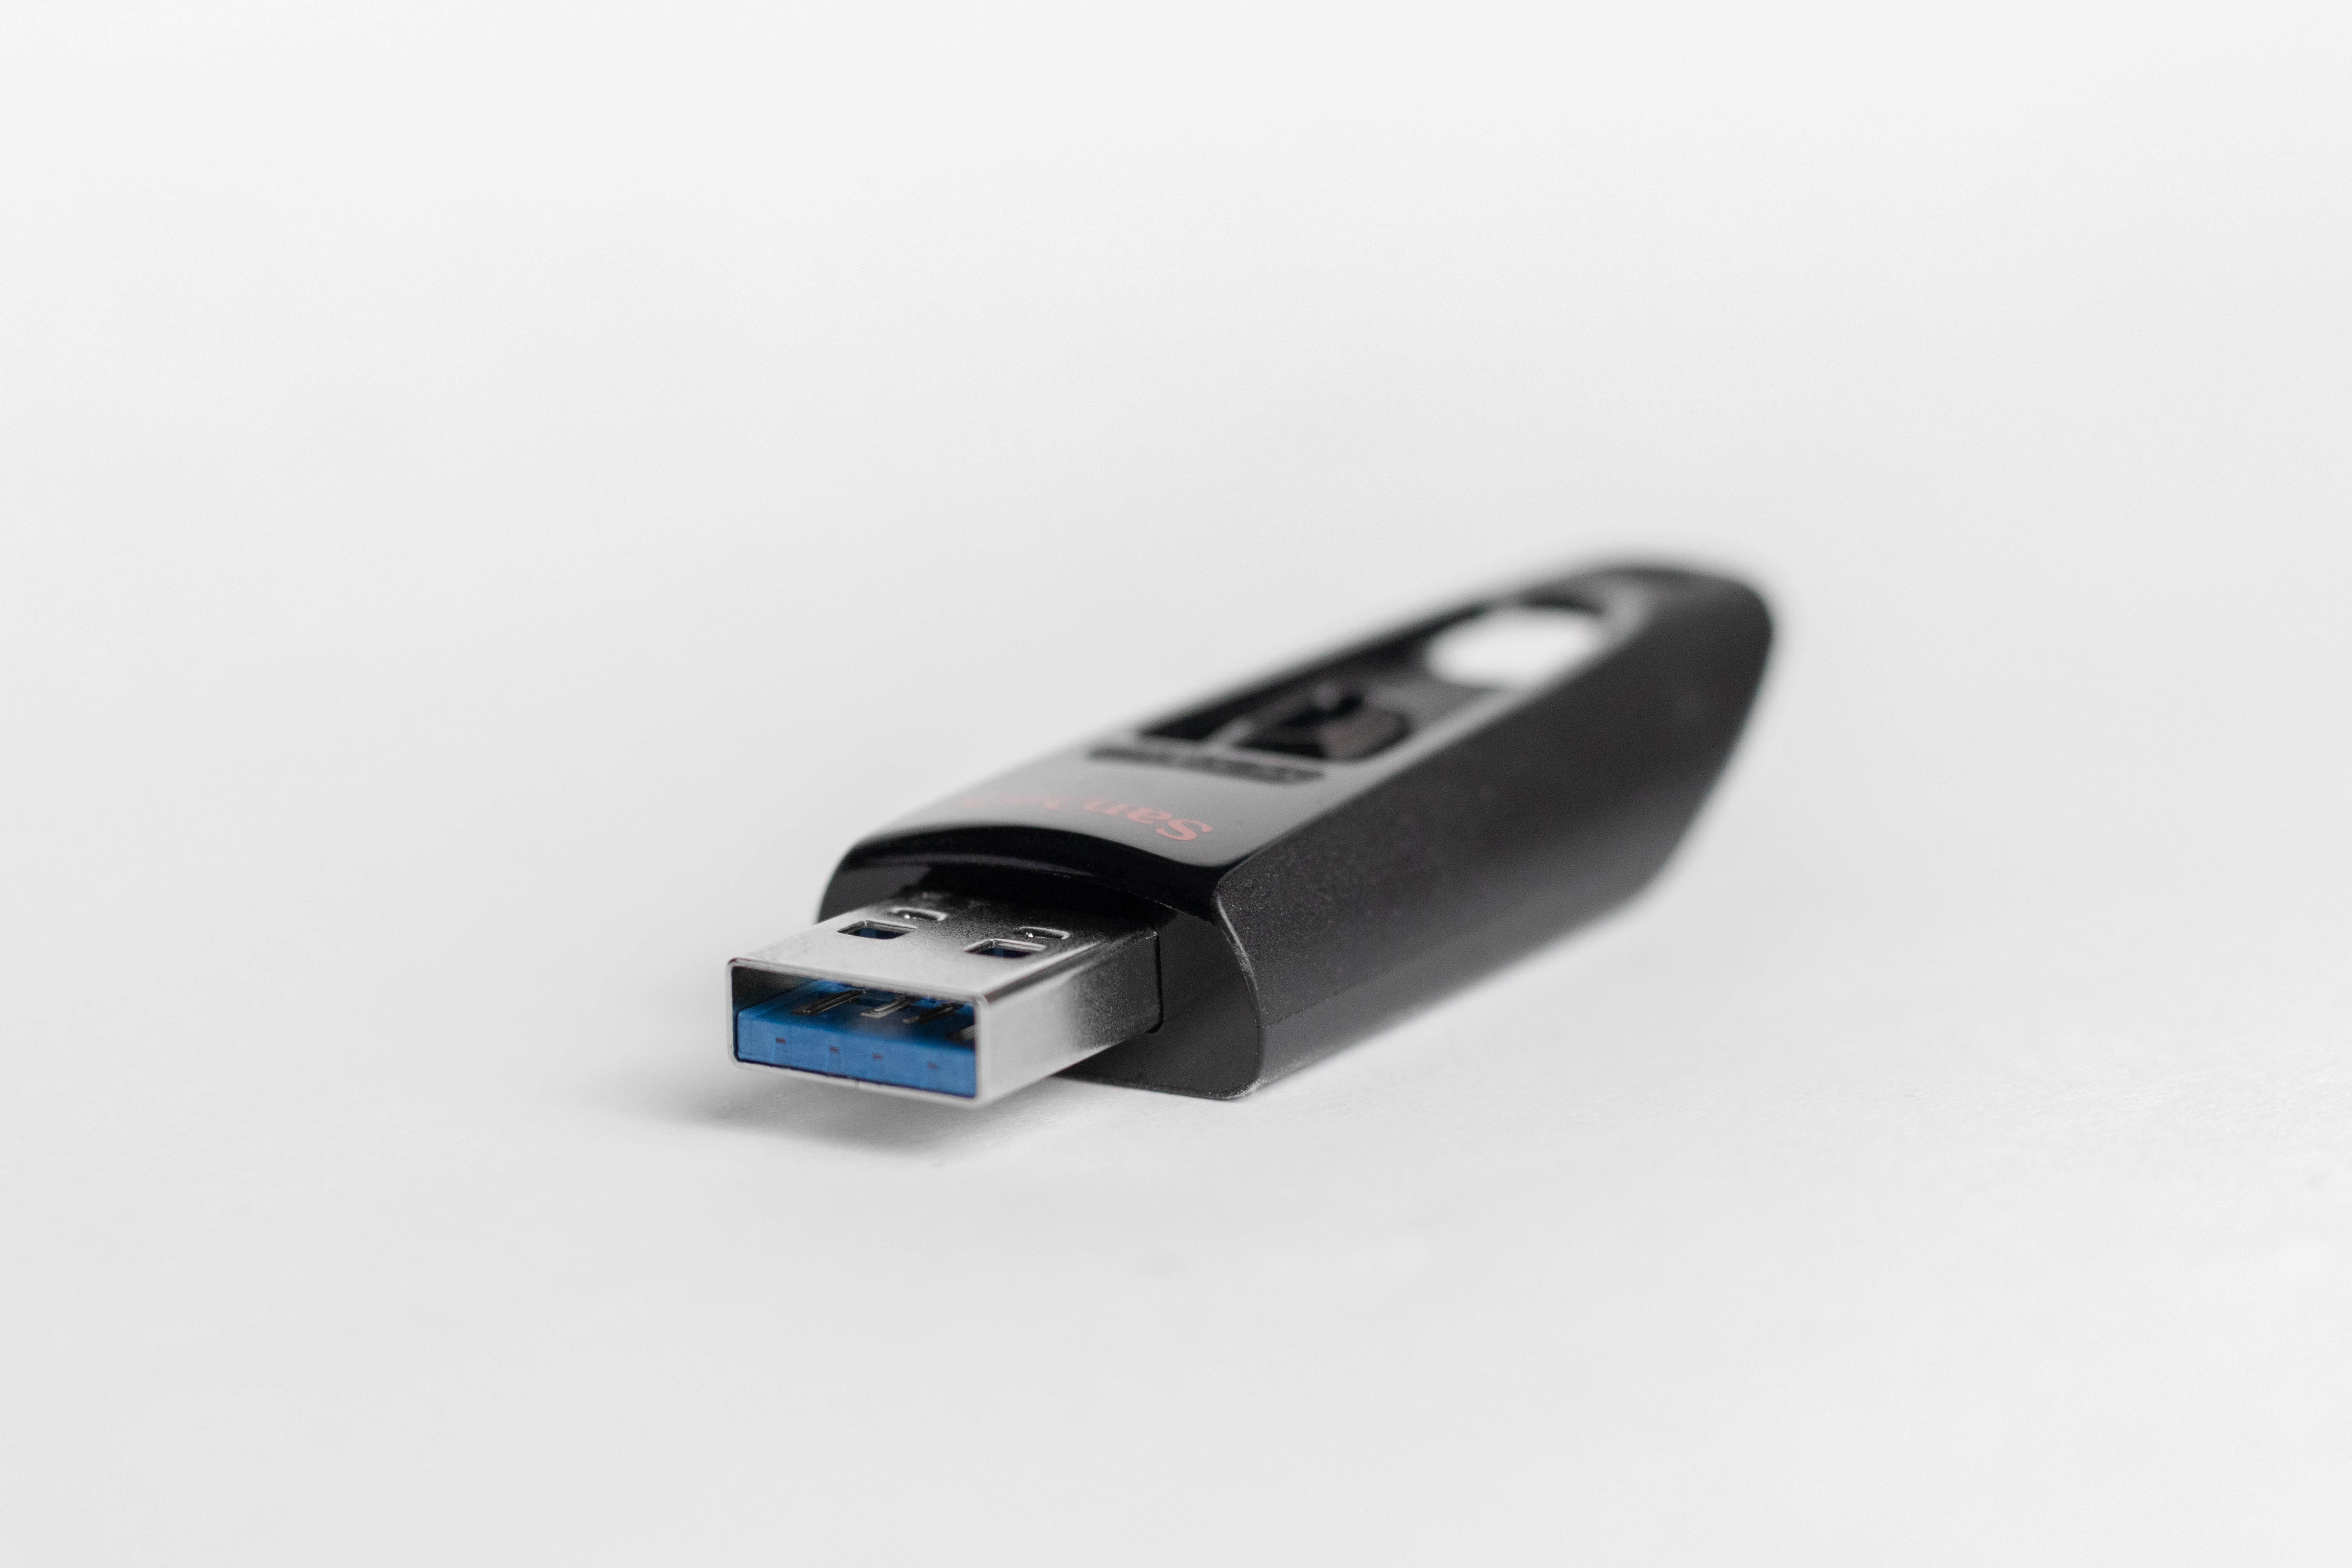 Free USB Thumb Drive Stick